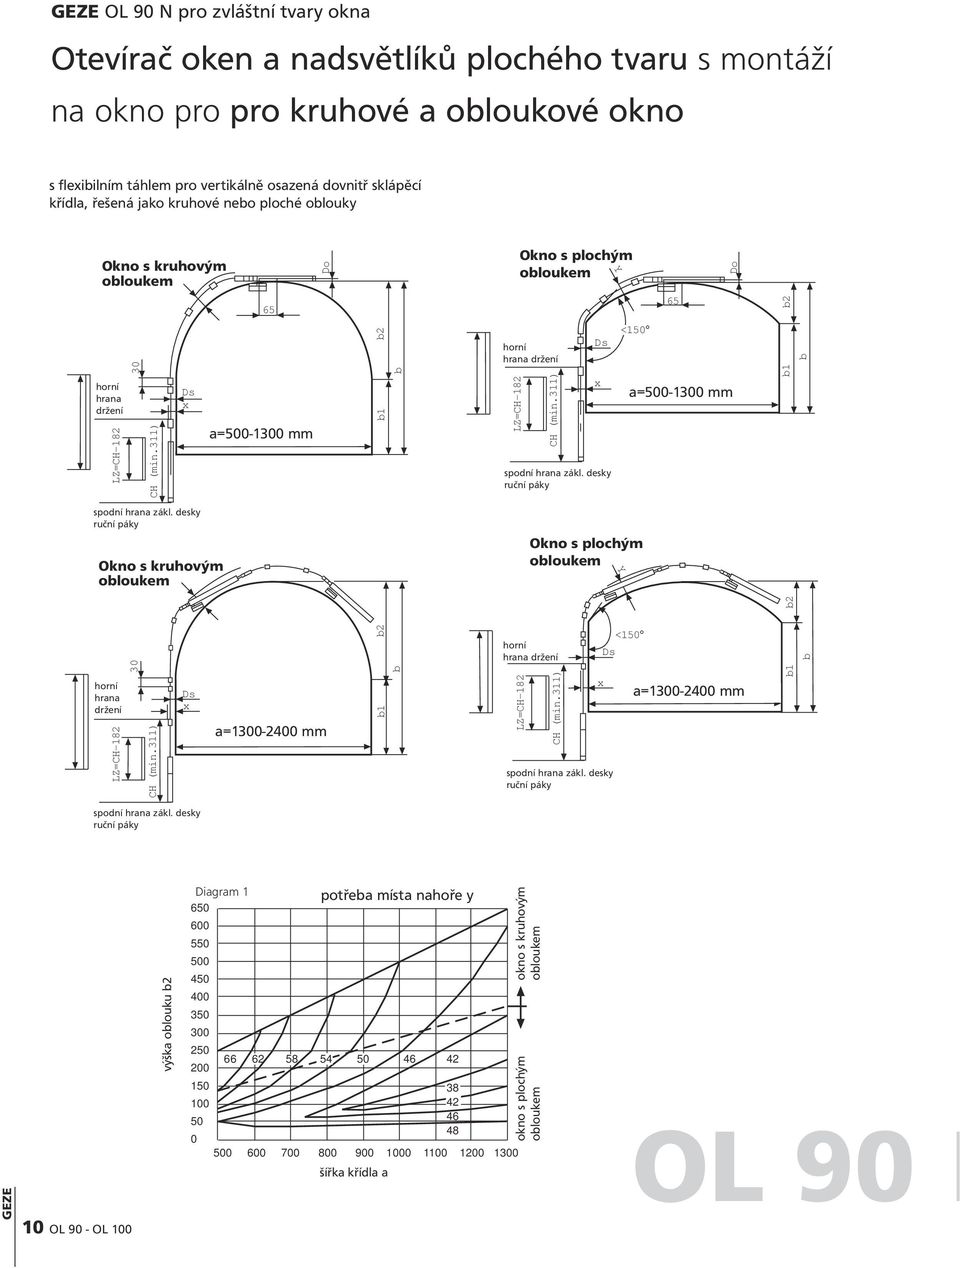 311) Ds x 65 Do a=500-1300 mm mm b2 b1 b LZ=CH-182 Okno s plochým obloukem horní hrana držení CH (min.311) Ds x spodní hrana zákl.